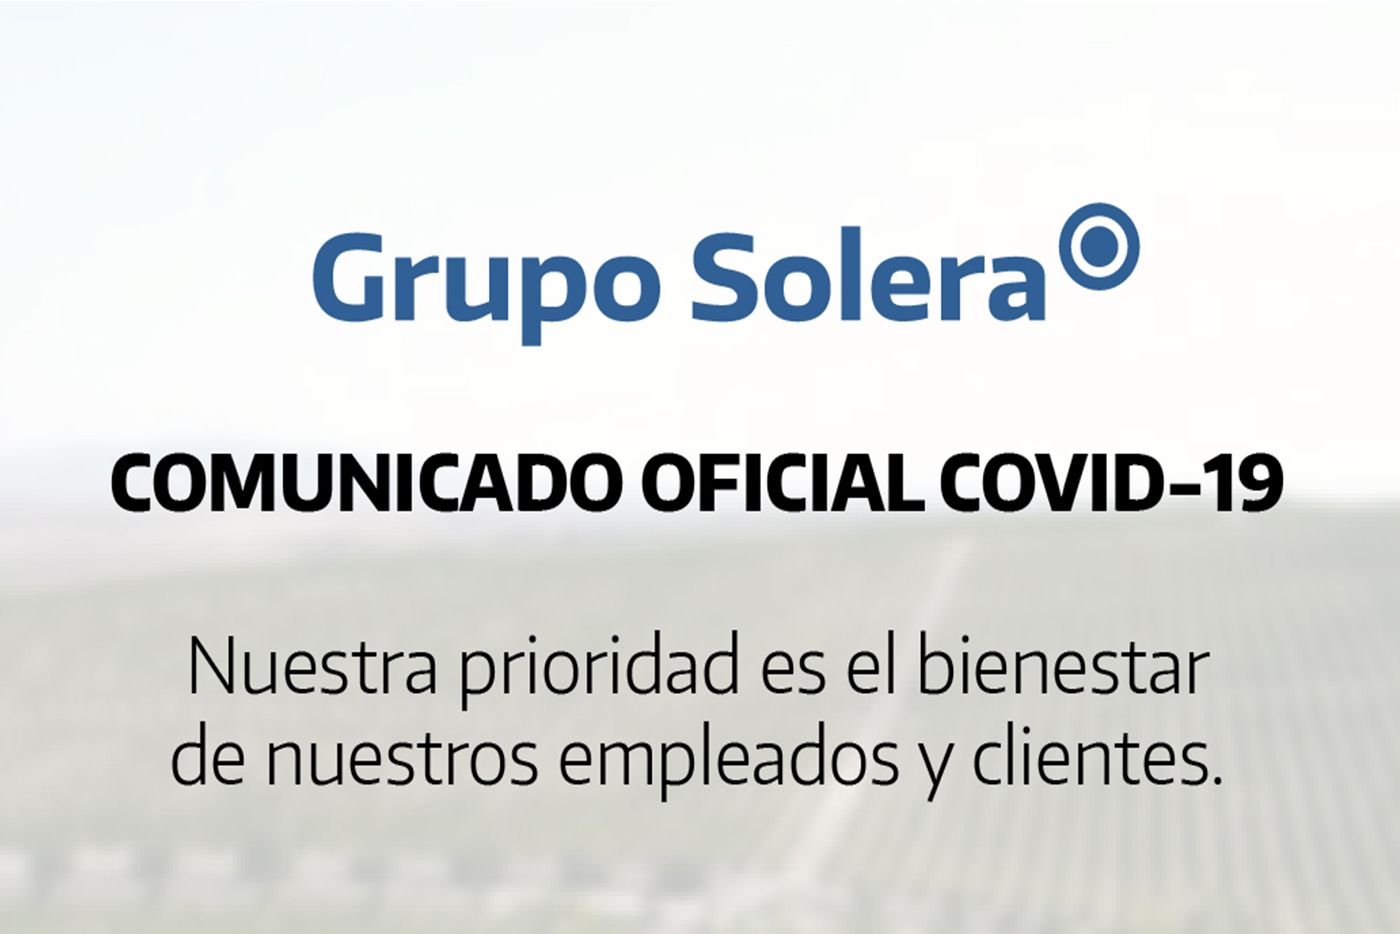 COMUNICADO OFICIAL COVID-19 GRUPO SOLERA